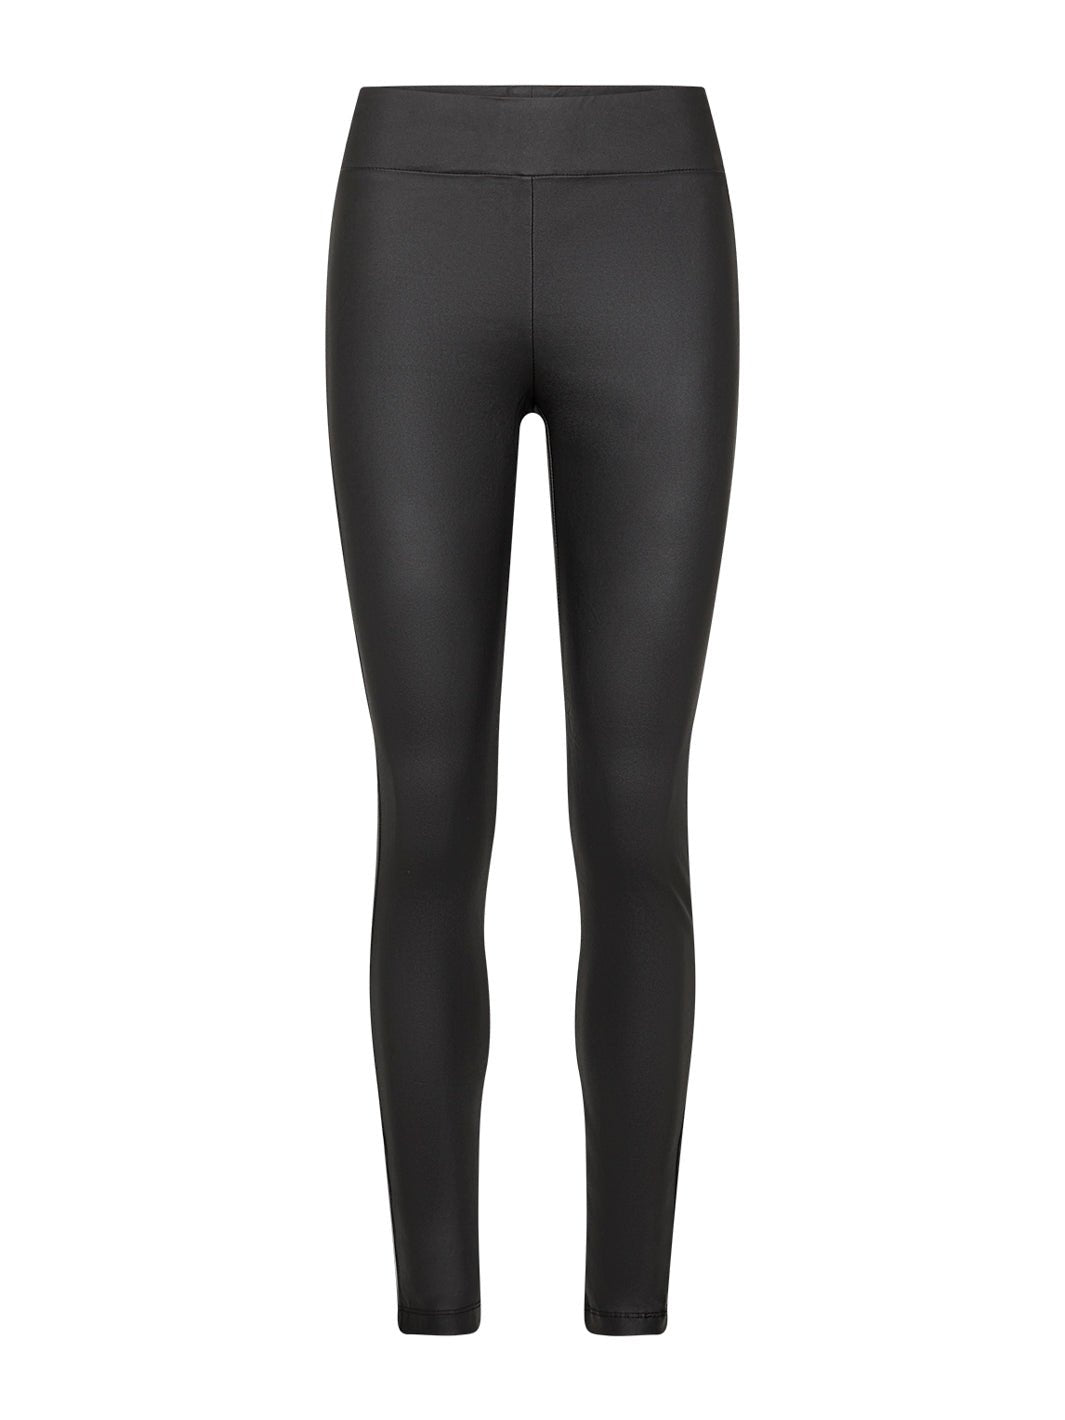 Soya Concept Pam 9B leggings black - Online-Mode